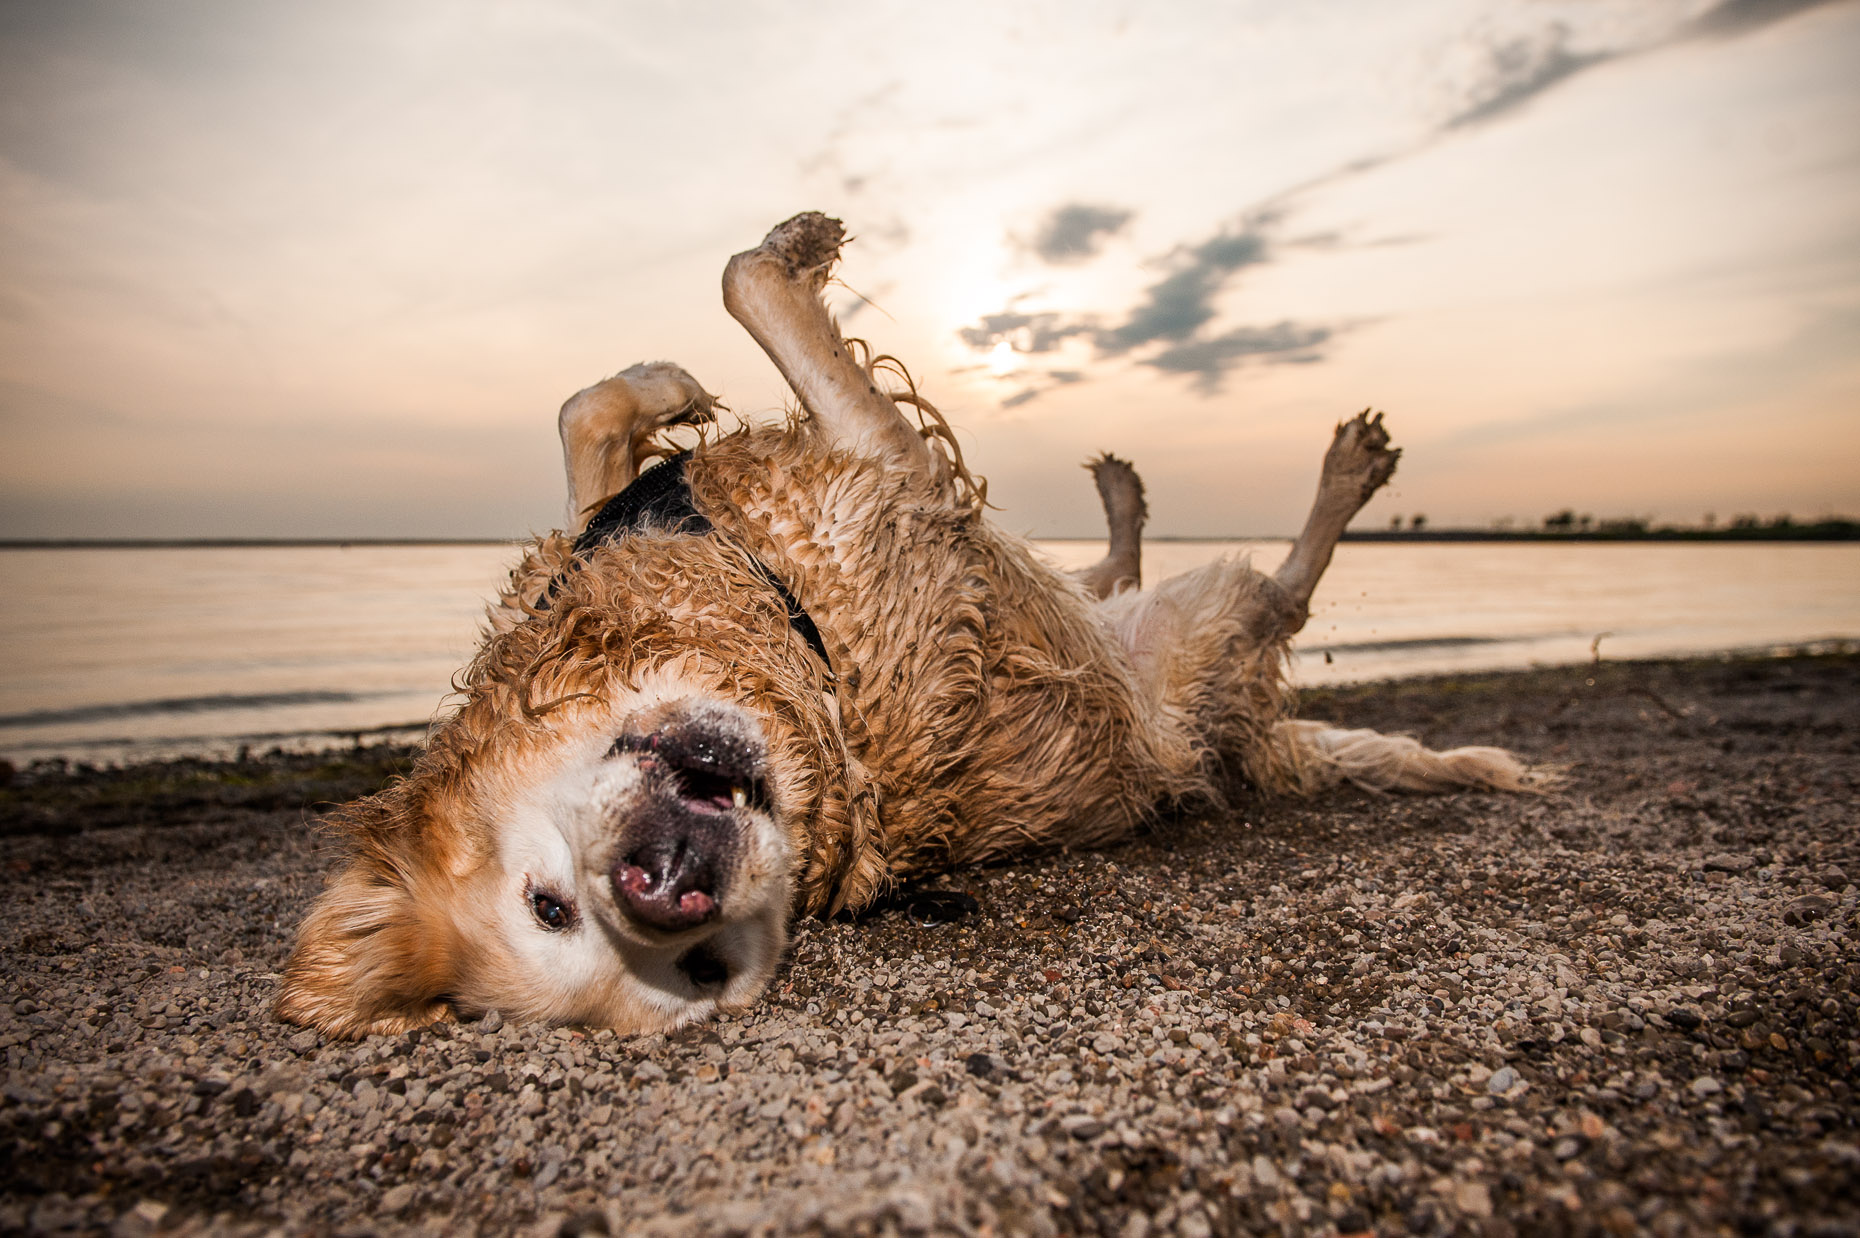 aaron-ingrao-dog-beach-rolling-fun.jpg